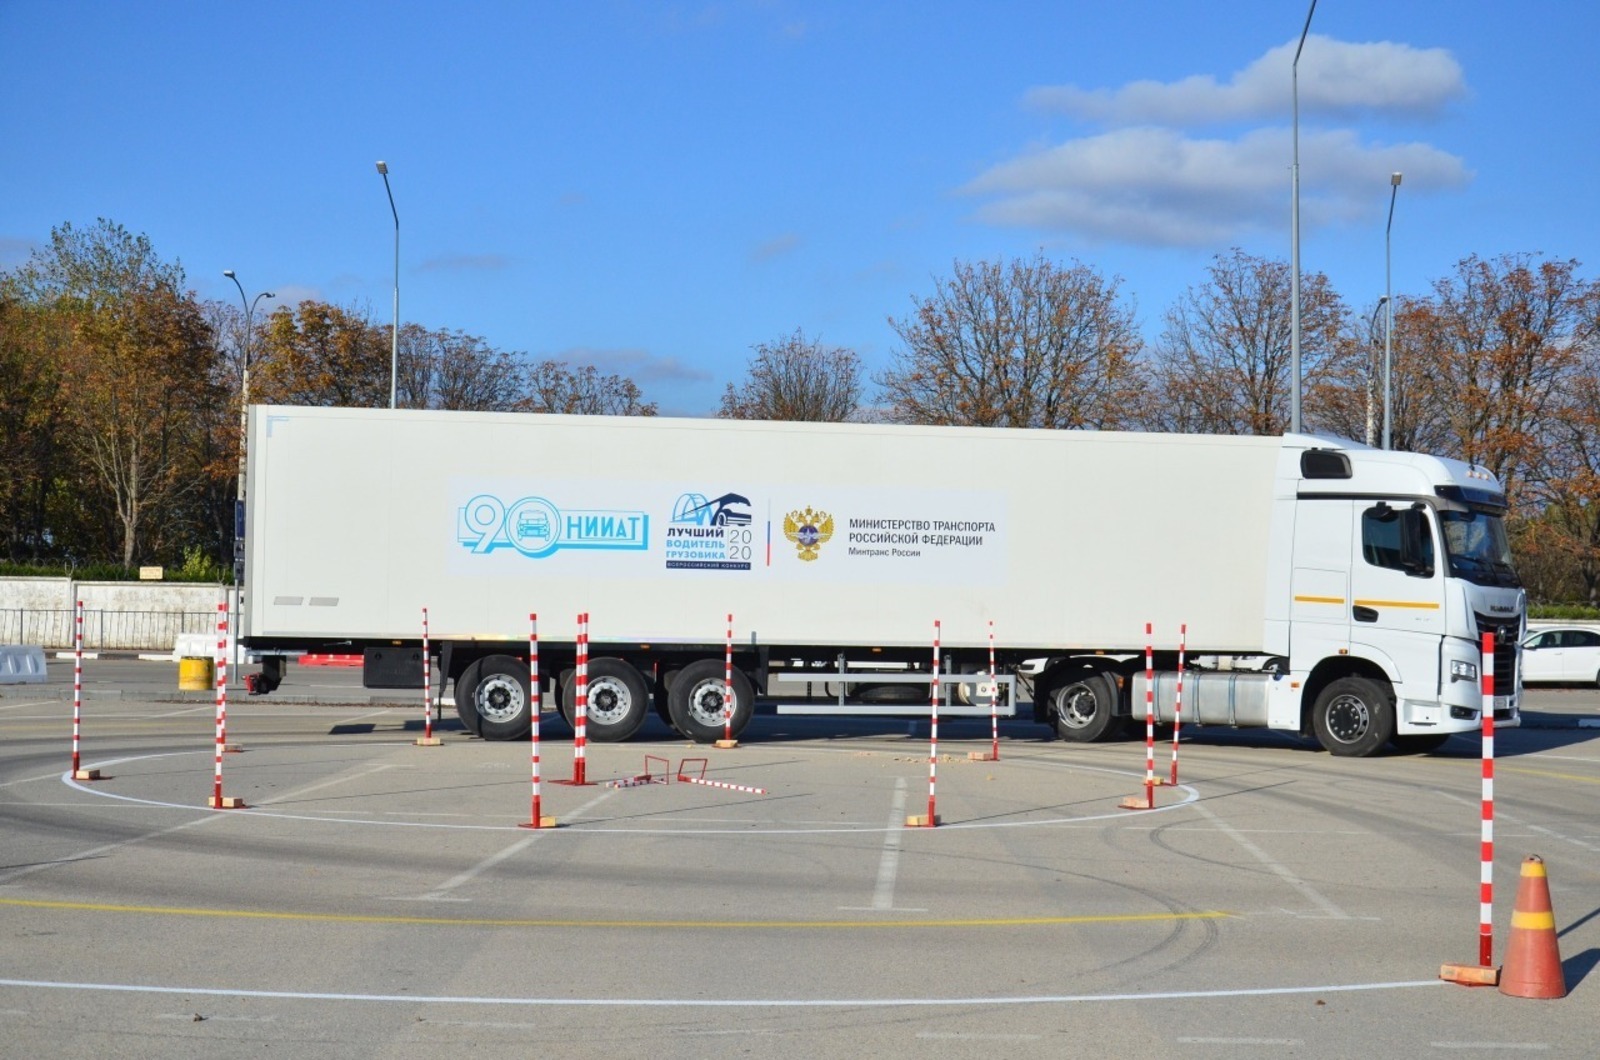 Победители конкурса водителей грузовиков получат призы по 300 тысяч рублей